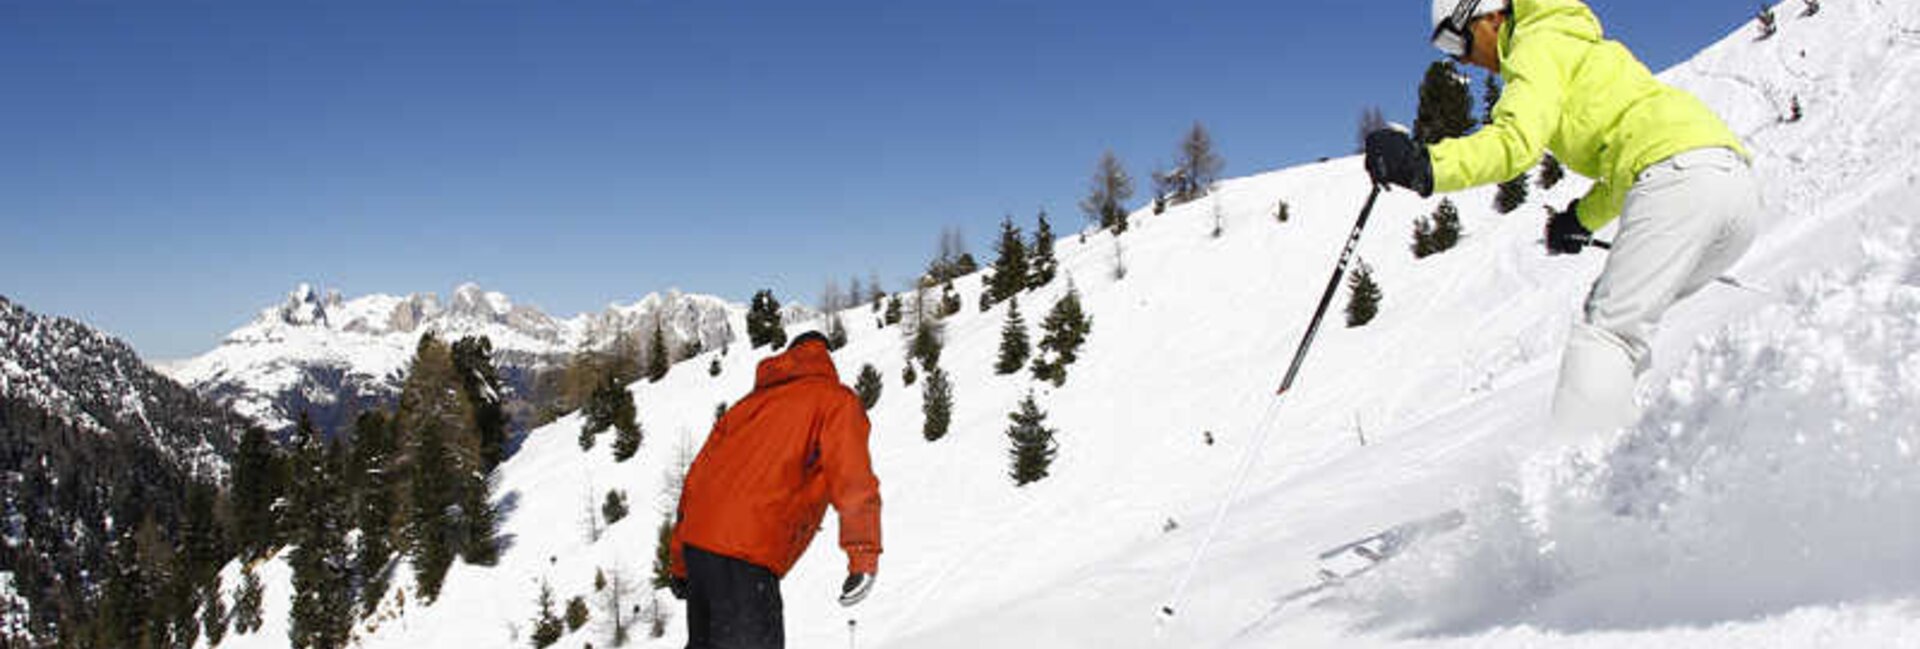 Ski area Moena Alpe Lusia, sciatori sulla neve fresca